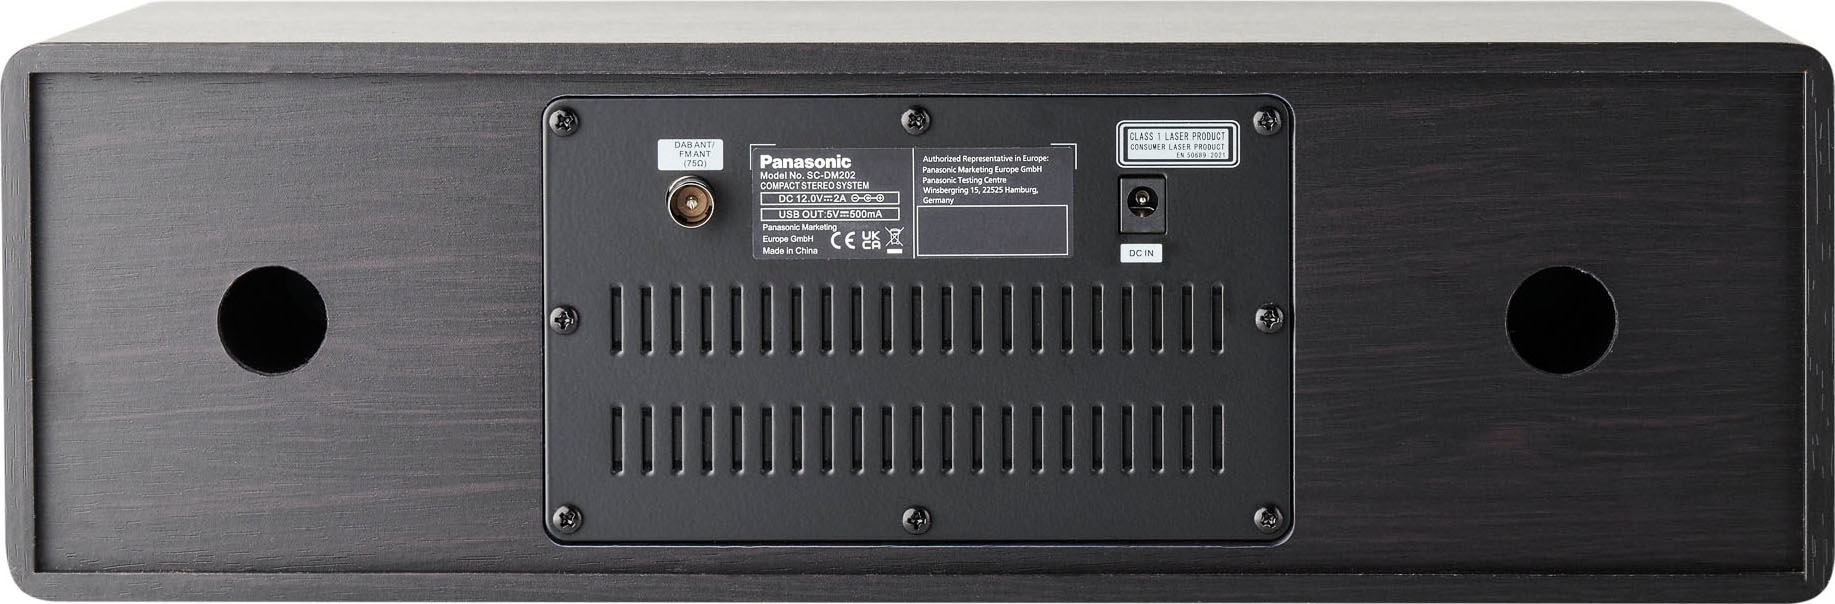 Panasonic Stereoanlage »DM202«, (Bluetooth Digitalradio (DAB+)-UKW mit RDS- FM-Tuner 24 W) ➥ 3 Jahre XXL Garantie | UNIVERSAL